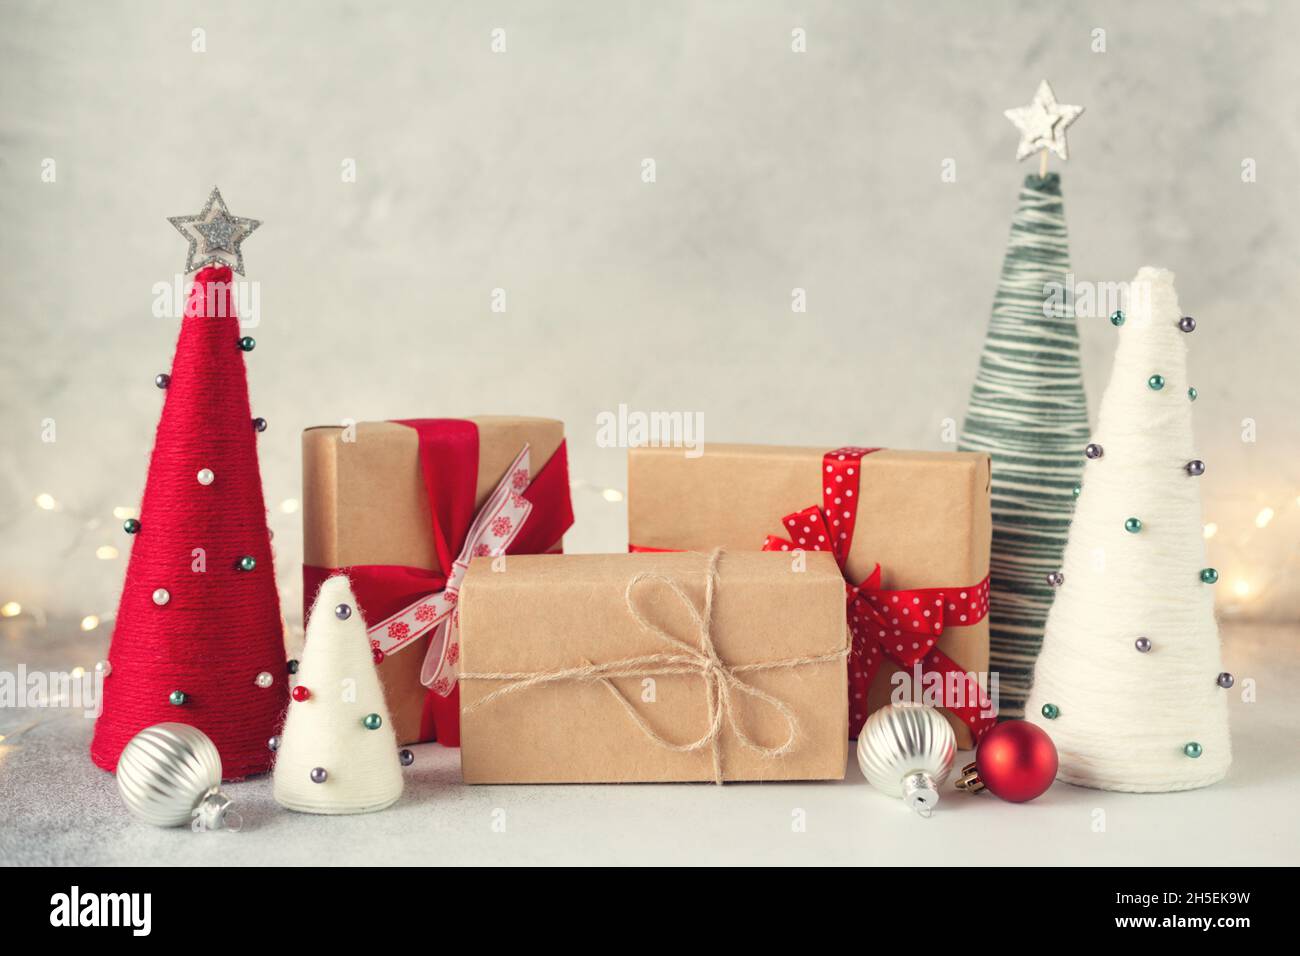 Composition de Noël avec boîtes cadeaux et arbres de Noël en forme de cône emballés de fils.Guirlande sur fond - image Banque D'Images